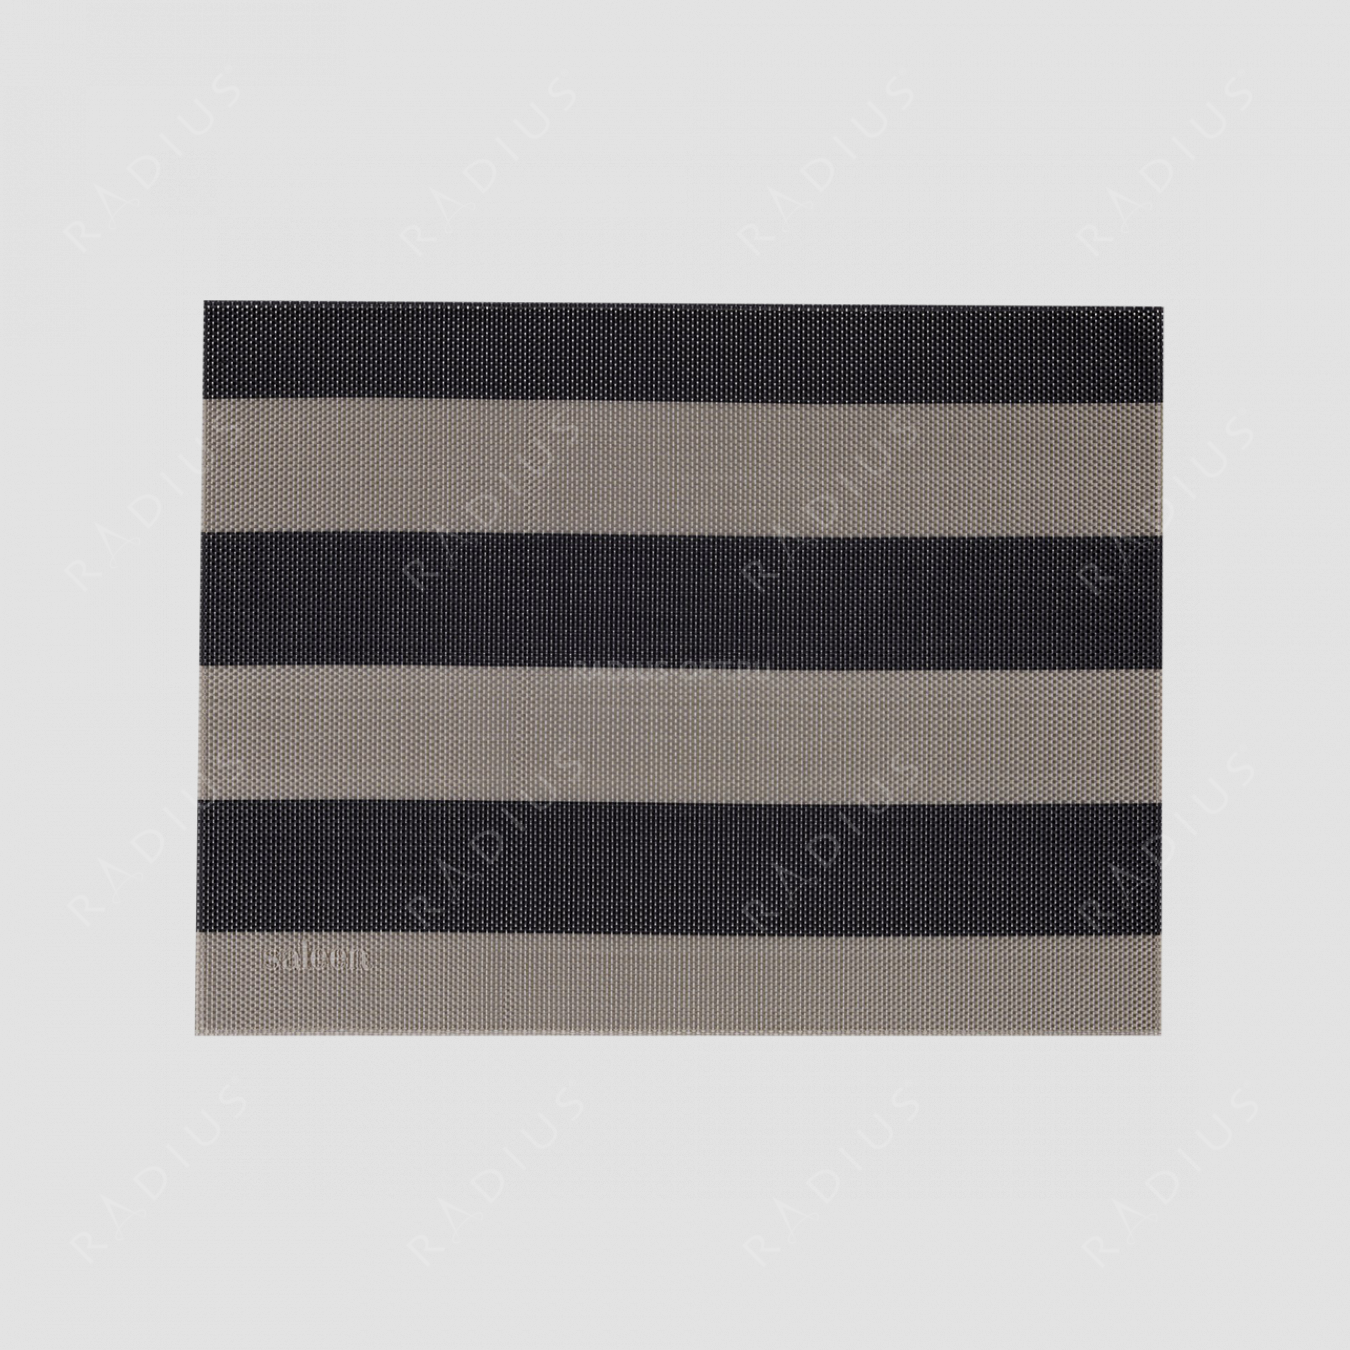 Салфетка подстановочная, винил, 32х42 см, цвет бежевый / черный, Stripes, серия Saleen, Westmark, Германия